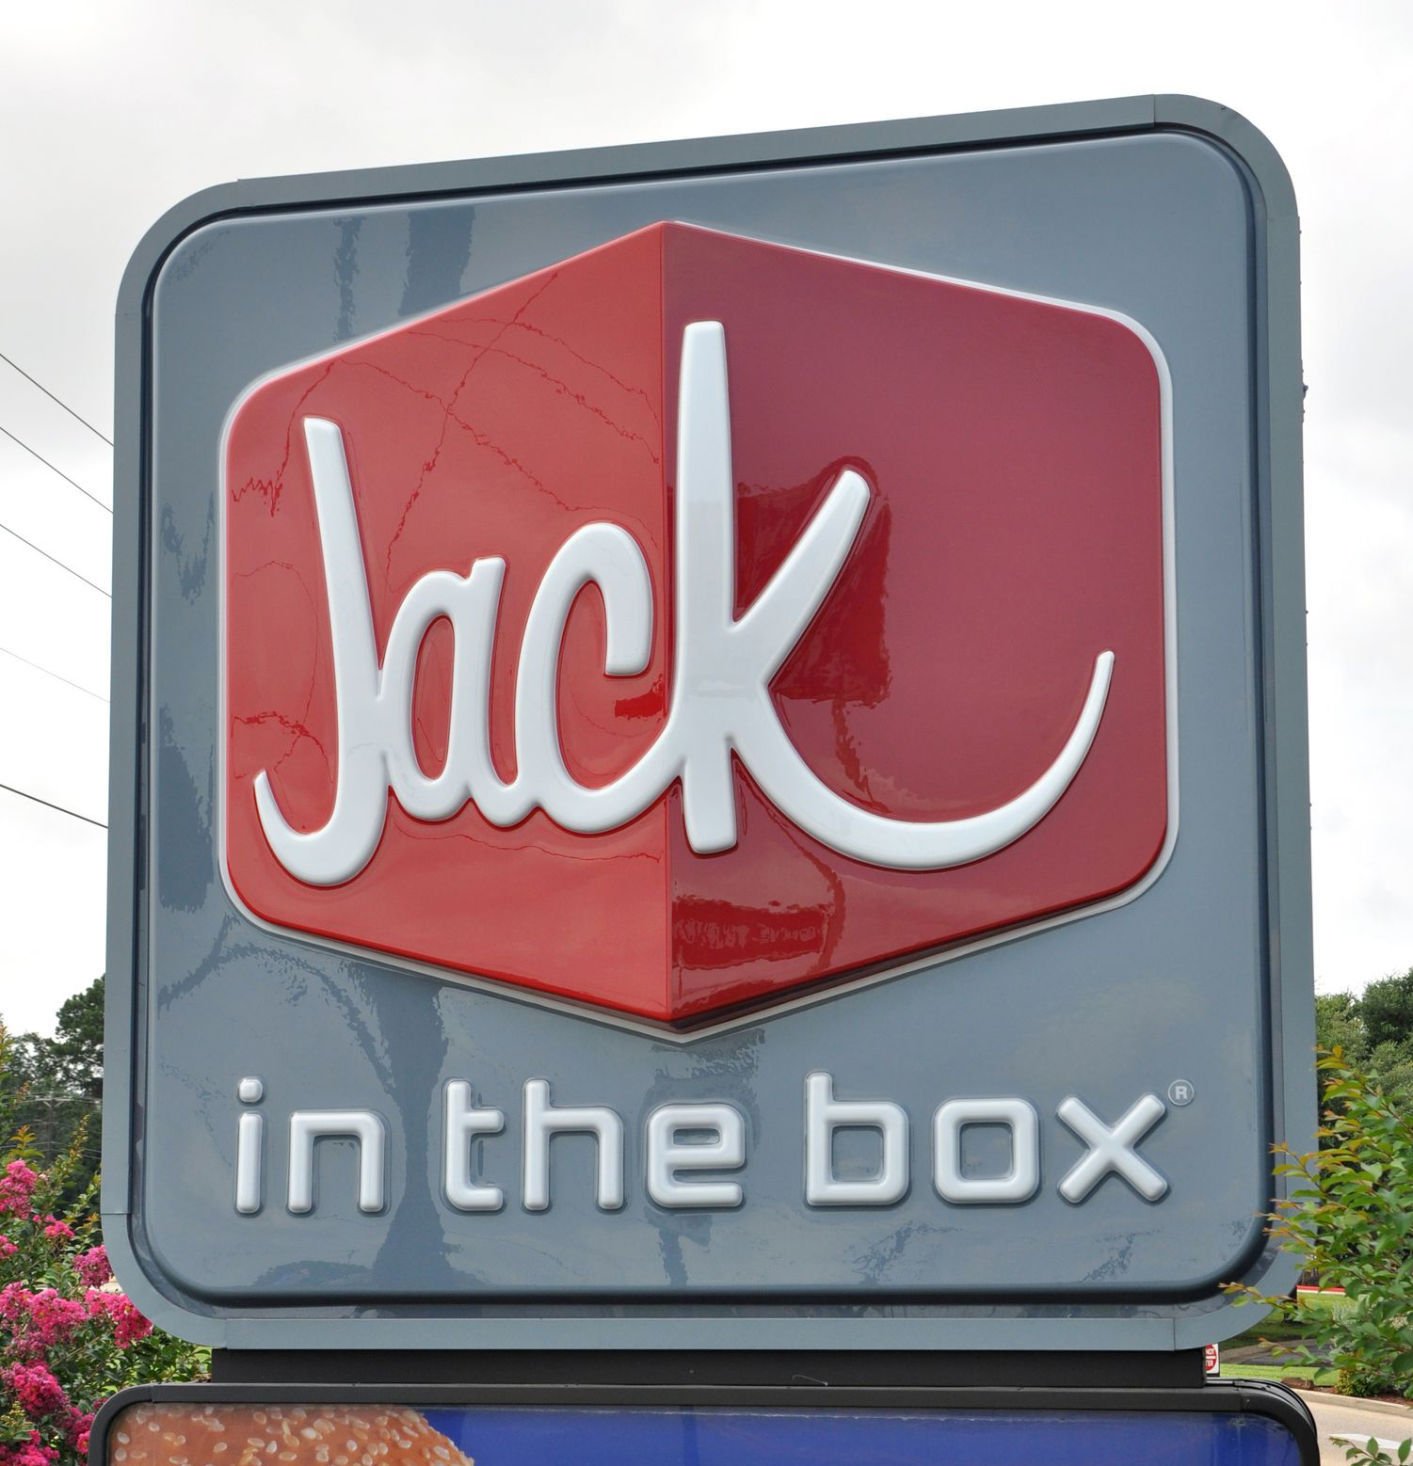 jack box guy